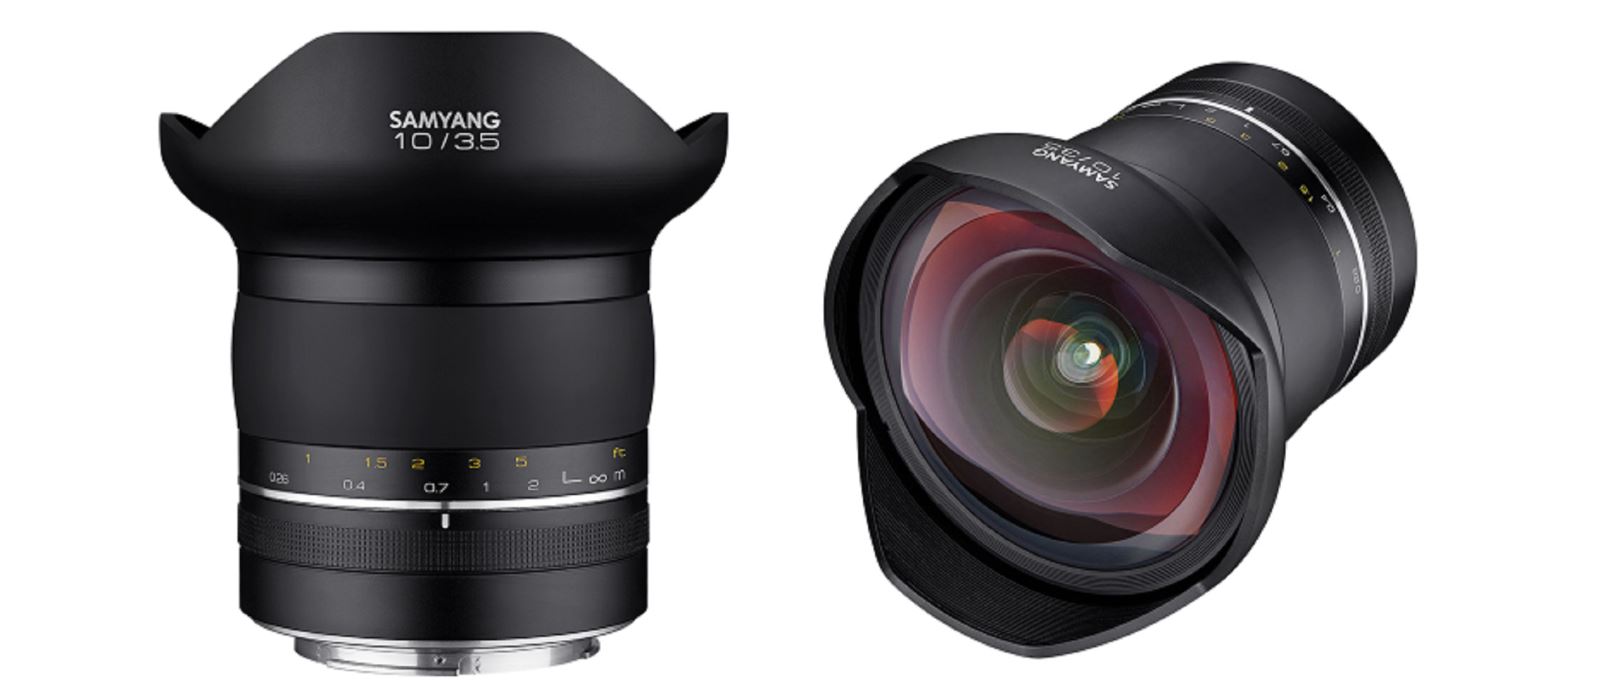 Samyang công bố Samyang XP 10mm f/3.5 - ống kính có tiêu cự rộng nhất thế giới